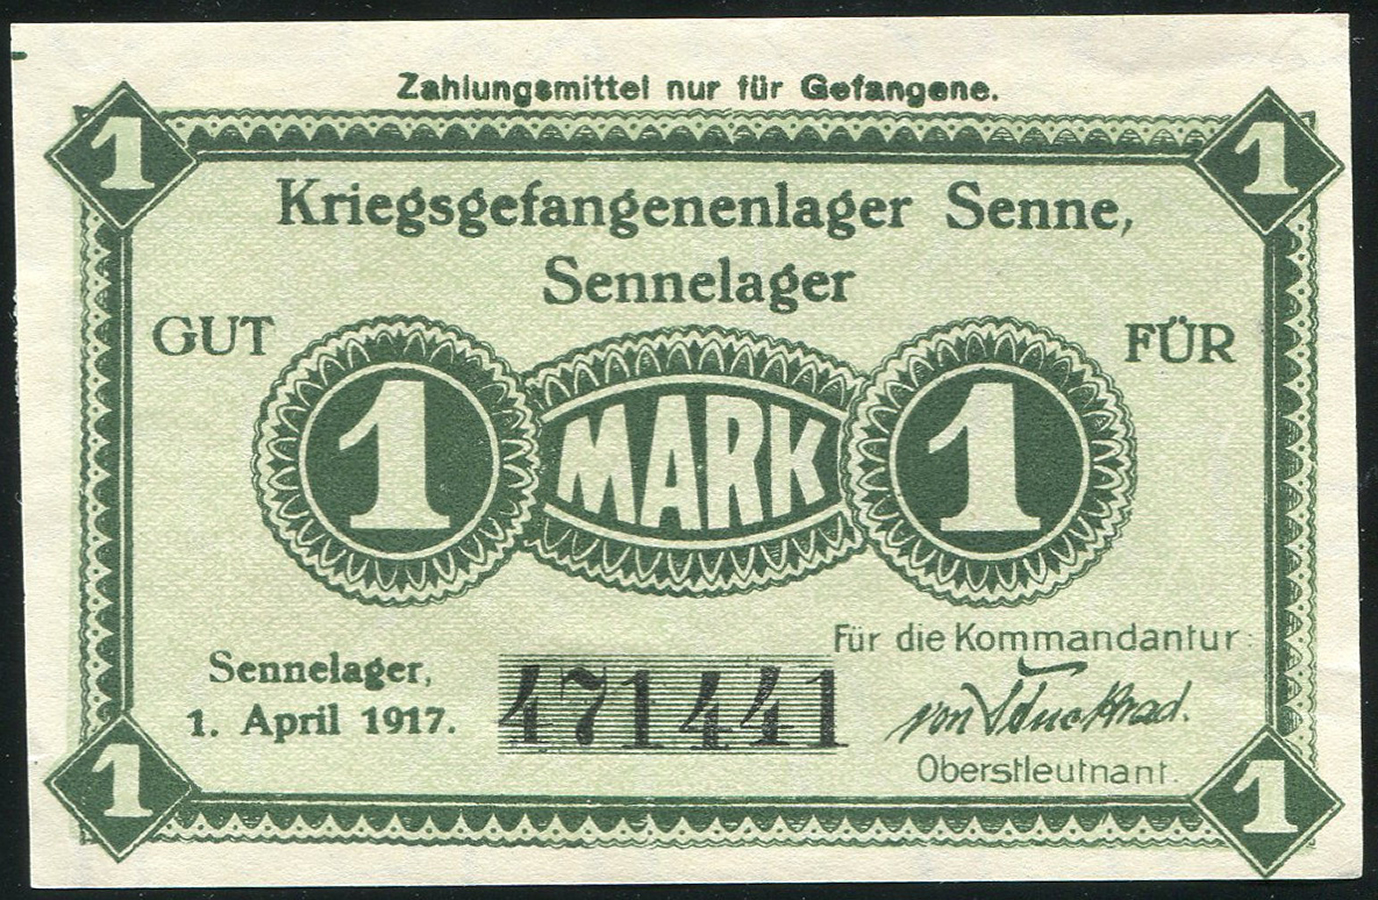 1 mark each. Германские марки 1917 года. 1/2 Германской марки 1917 года. Германская Империя марка 1917. 1 Марка Германии апрель 1917 года бумажная.